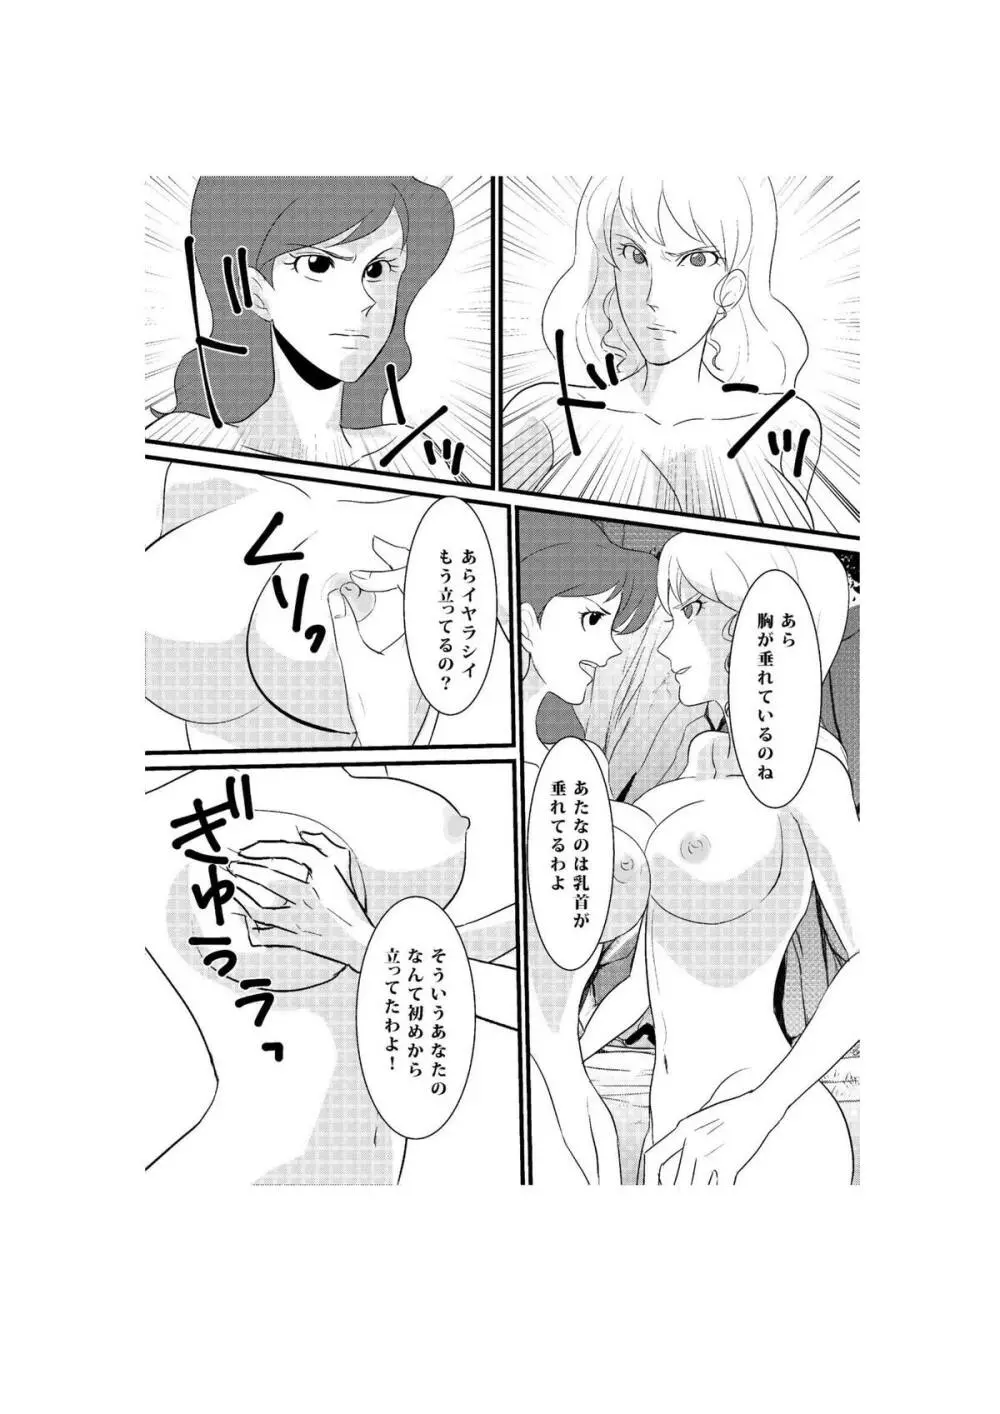 Fushi no Kyouten Ureta Onna no Tatakai - Fujiko VS Emmanuelle - page4